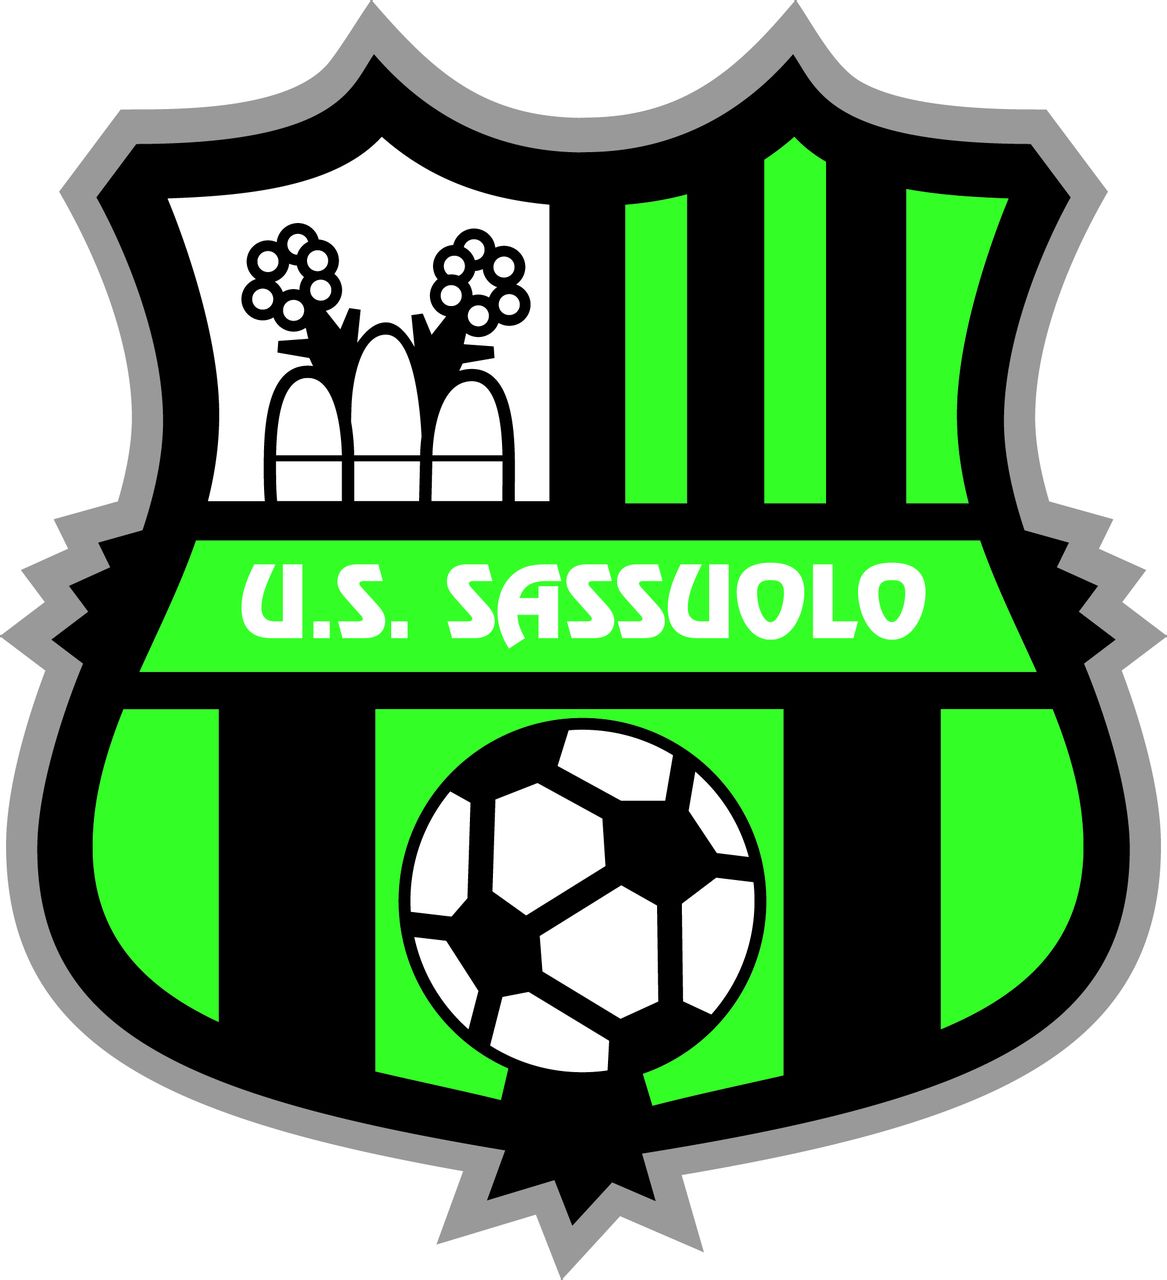 薩索羅足球俱樂部